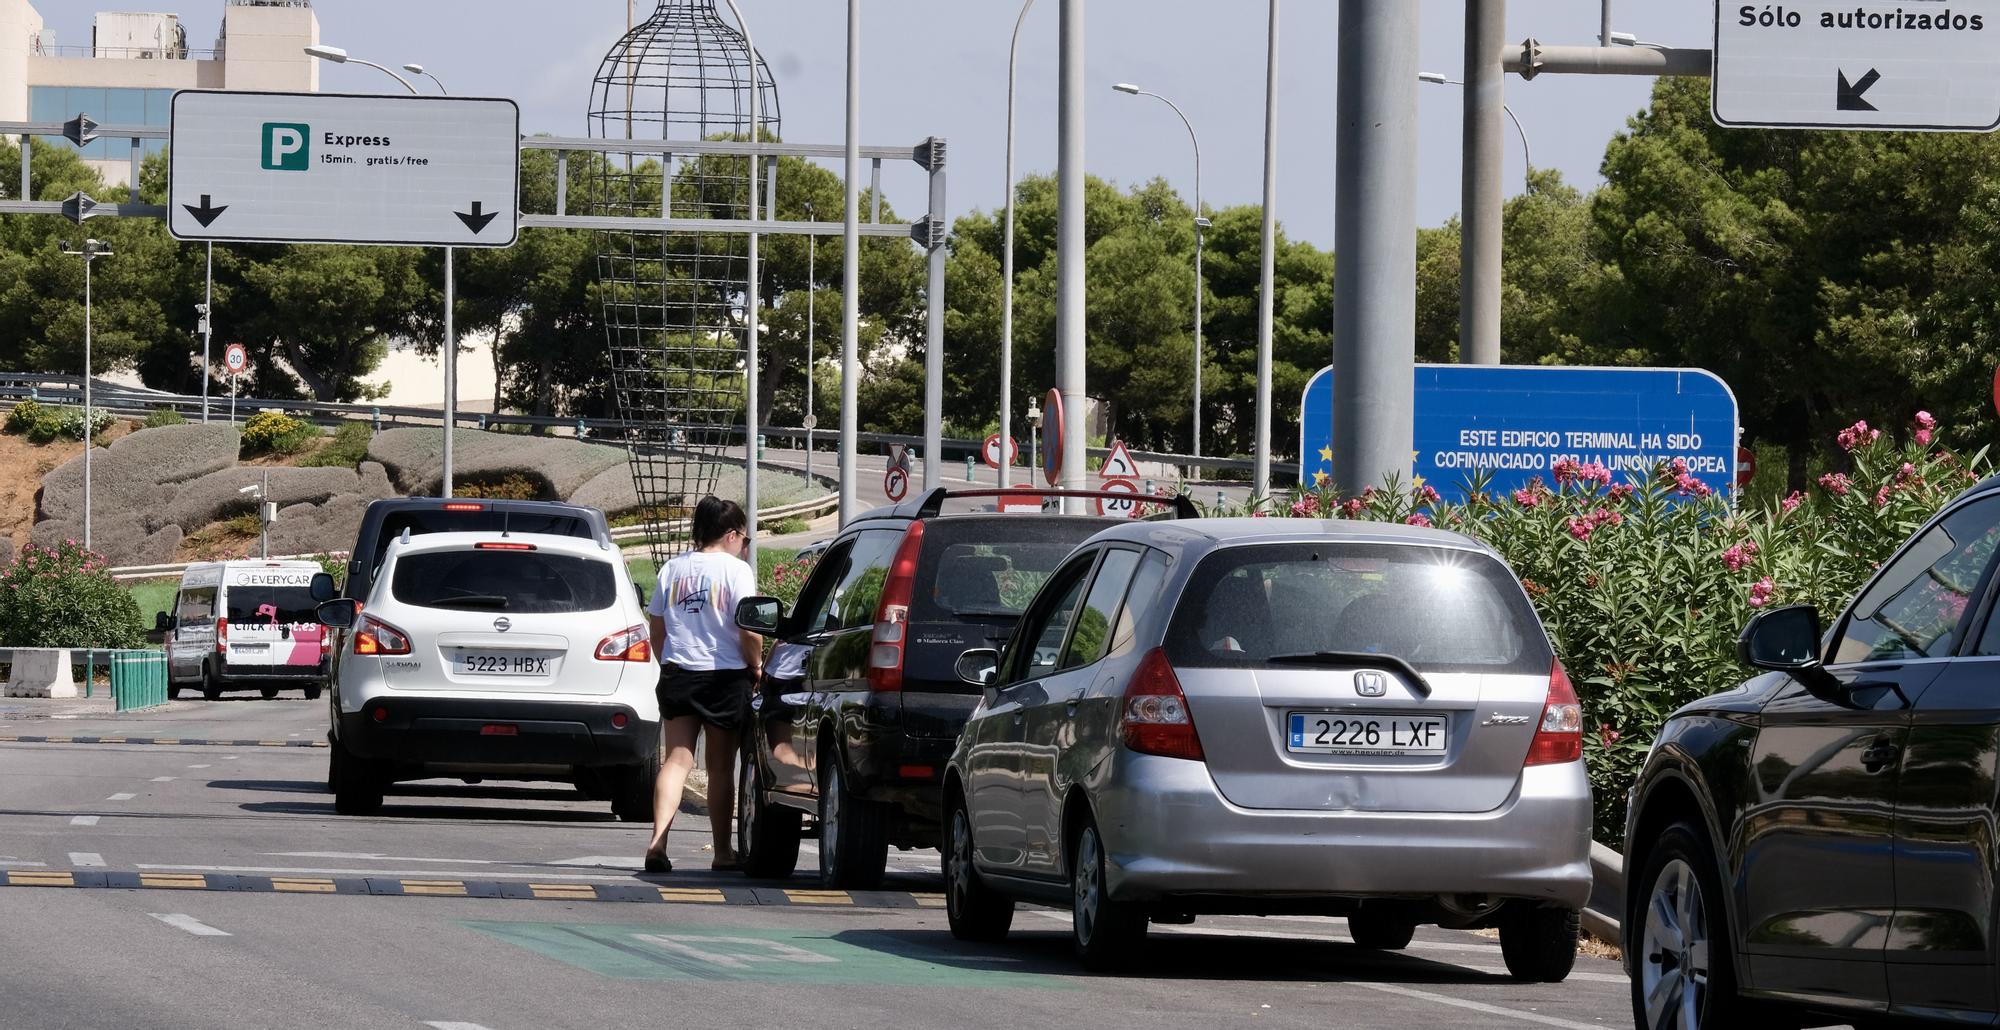 Las fotos del atasco de los 7.000 coches al día en el parking exprés del aeropuerto de Palma